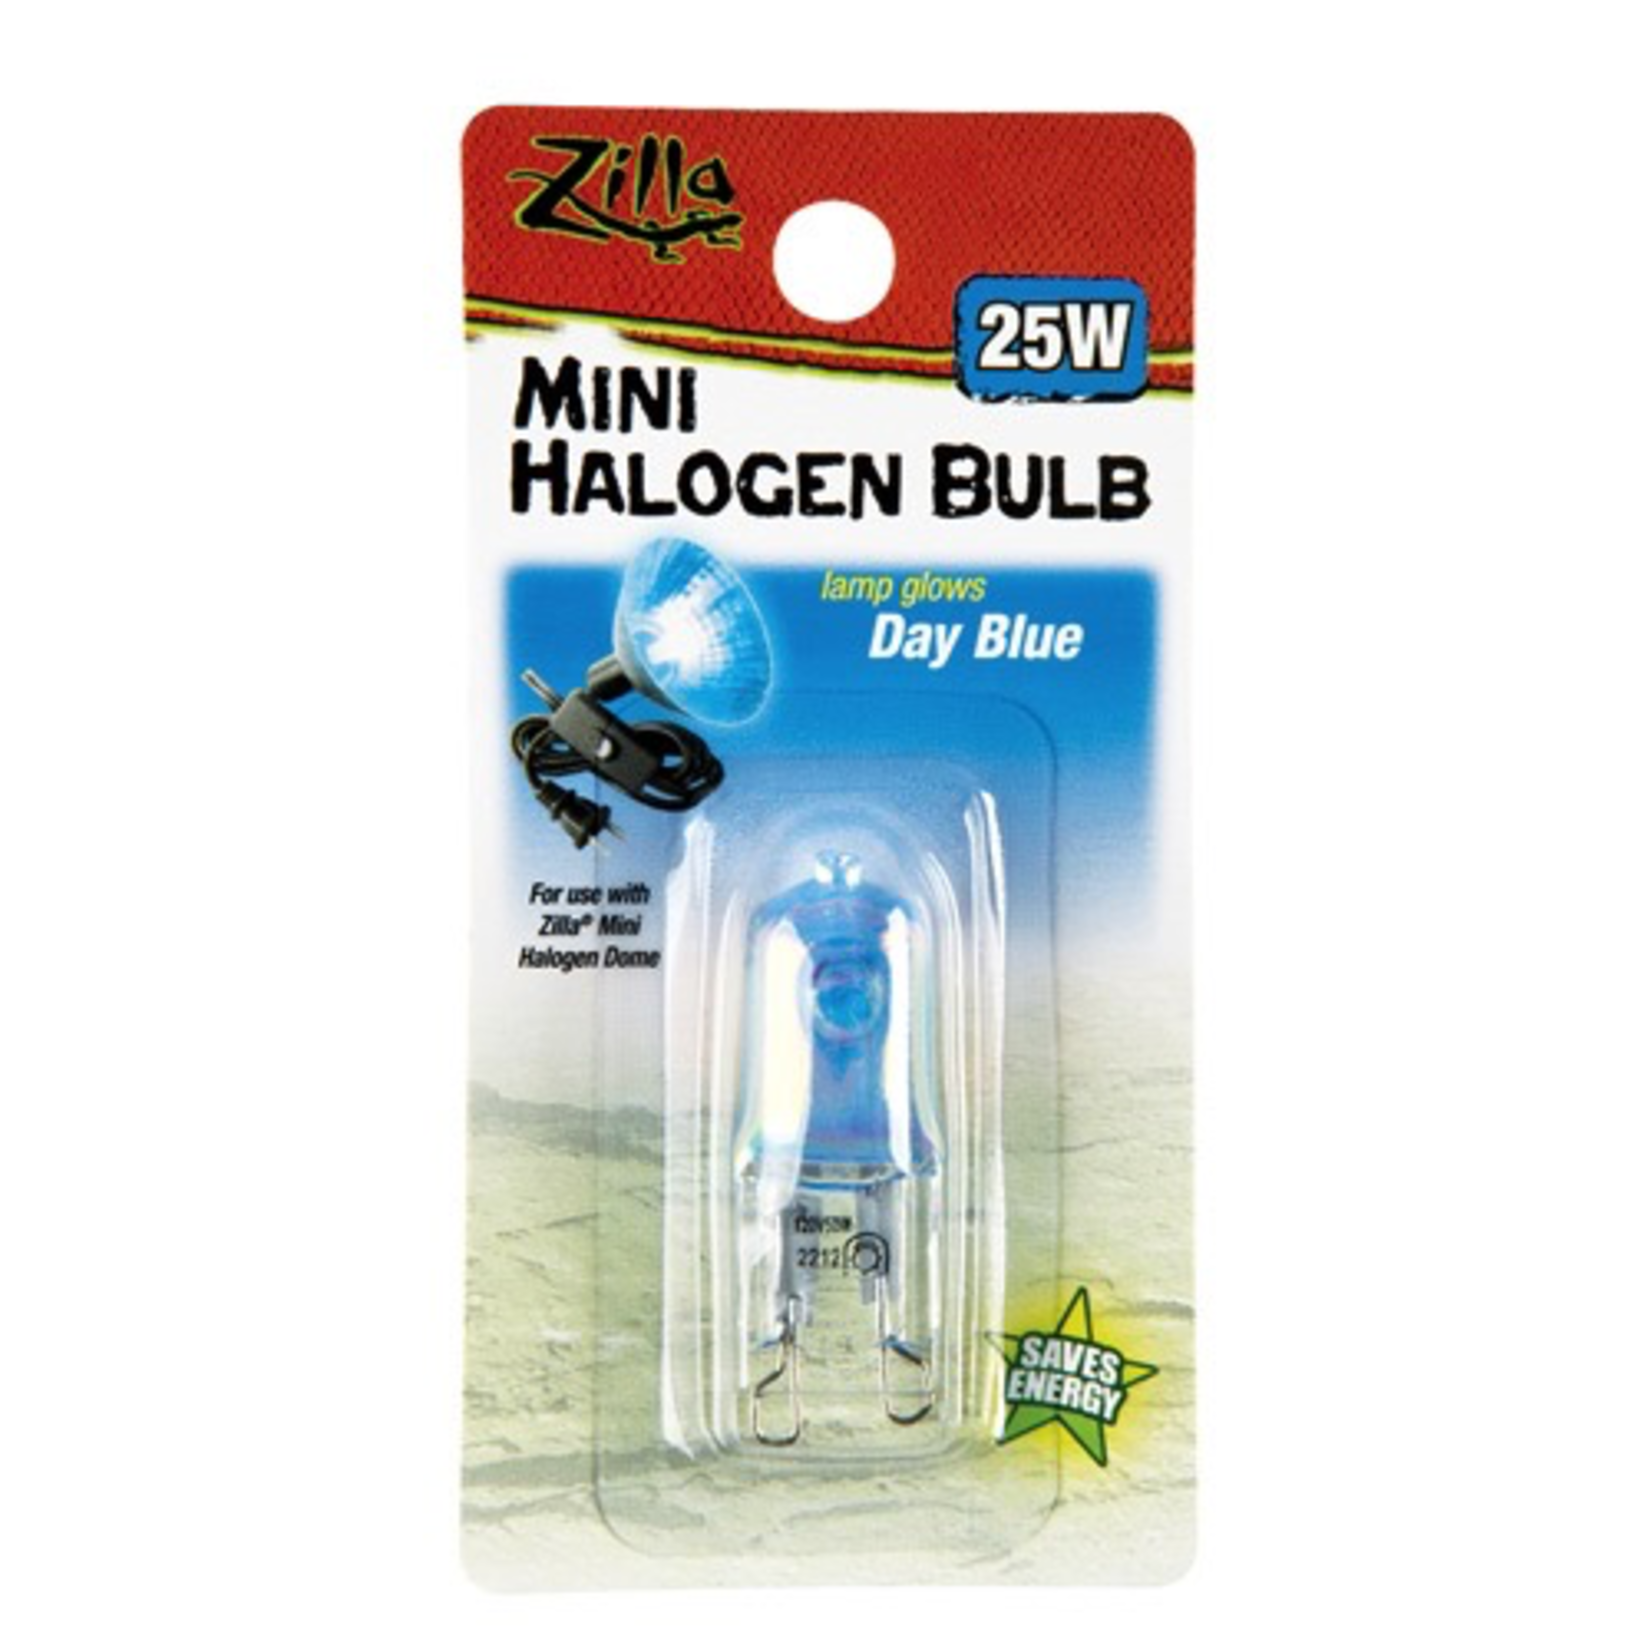 ZILLA (W) Mini Halogen Bulb - Day Blue - 25 W